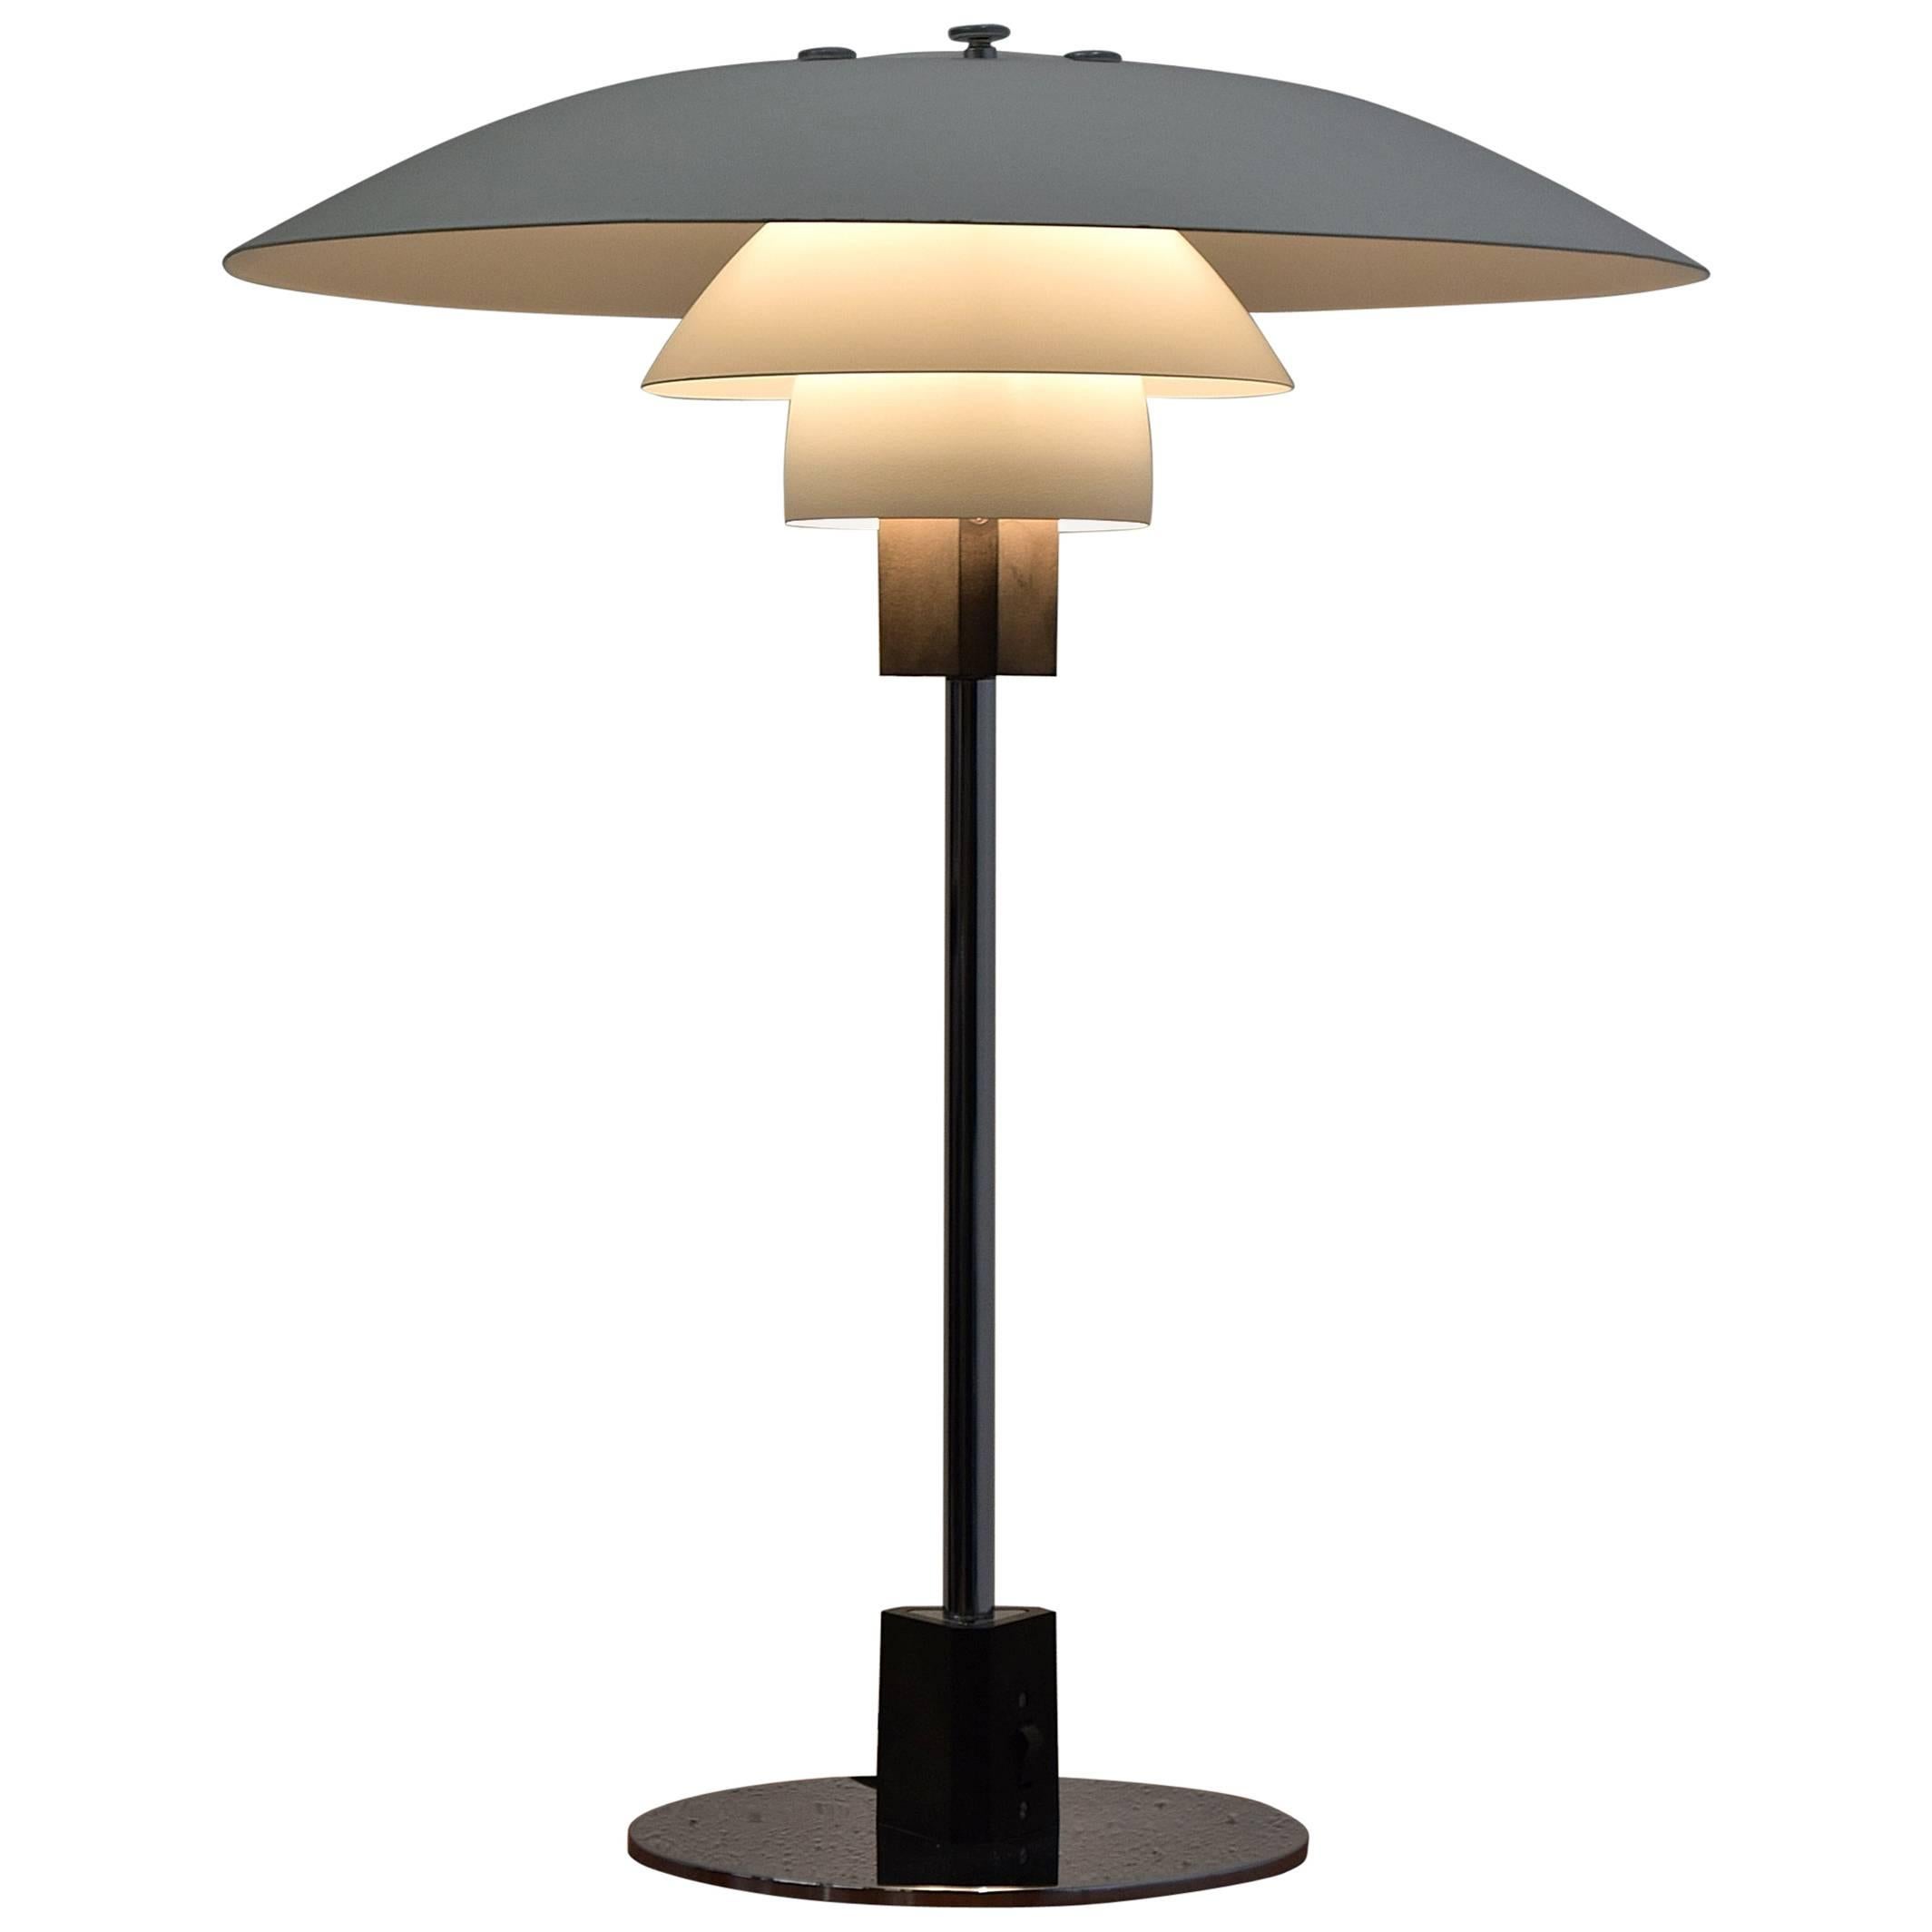 Poul Henningsen Mid Century Modern Table Lamp for Louis Poulsen